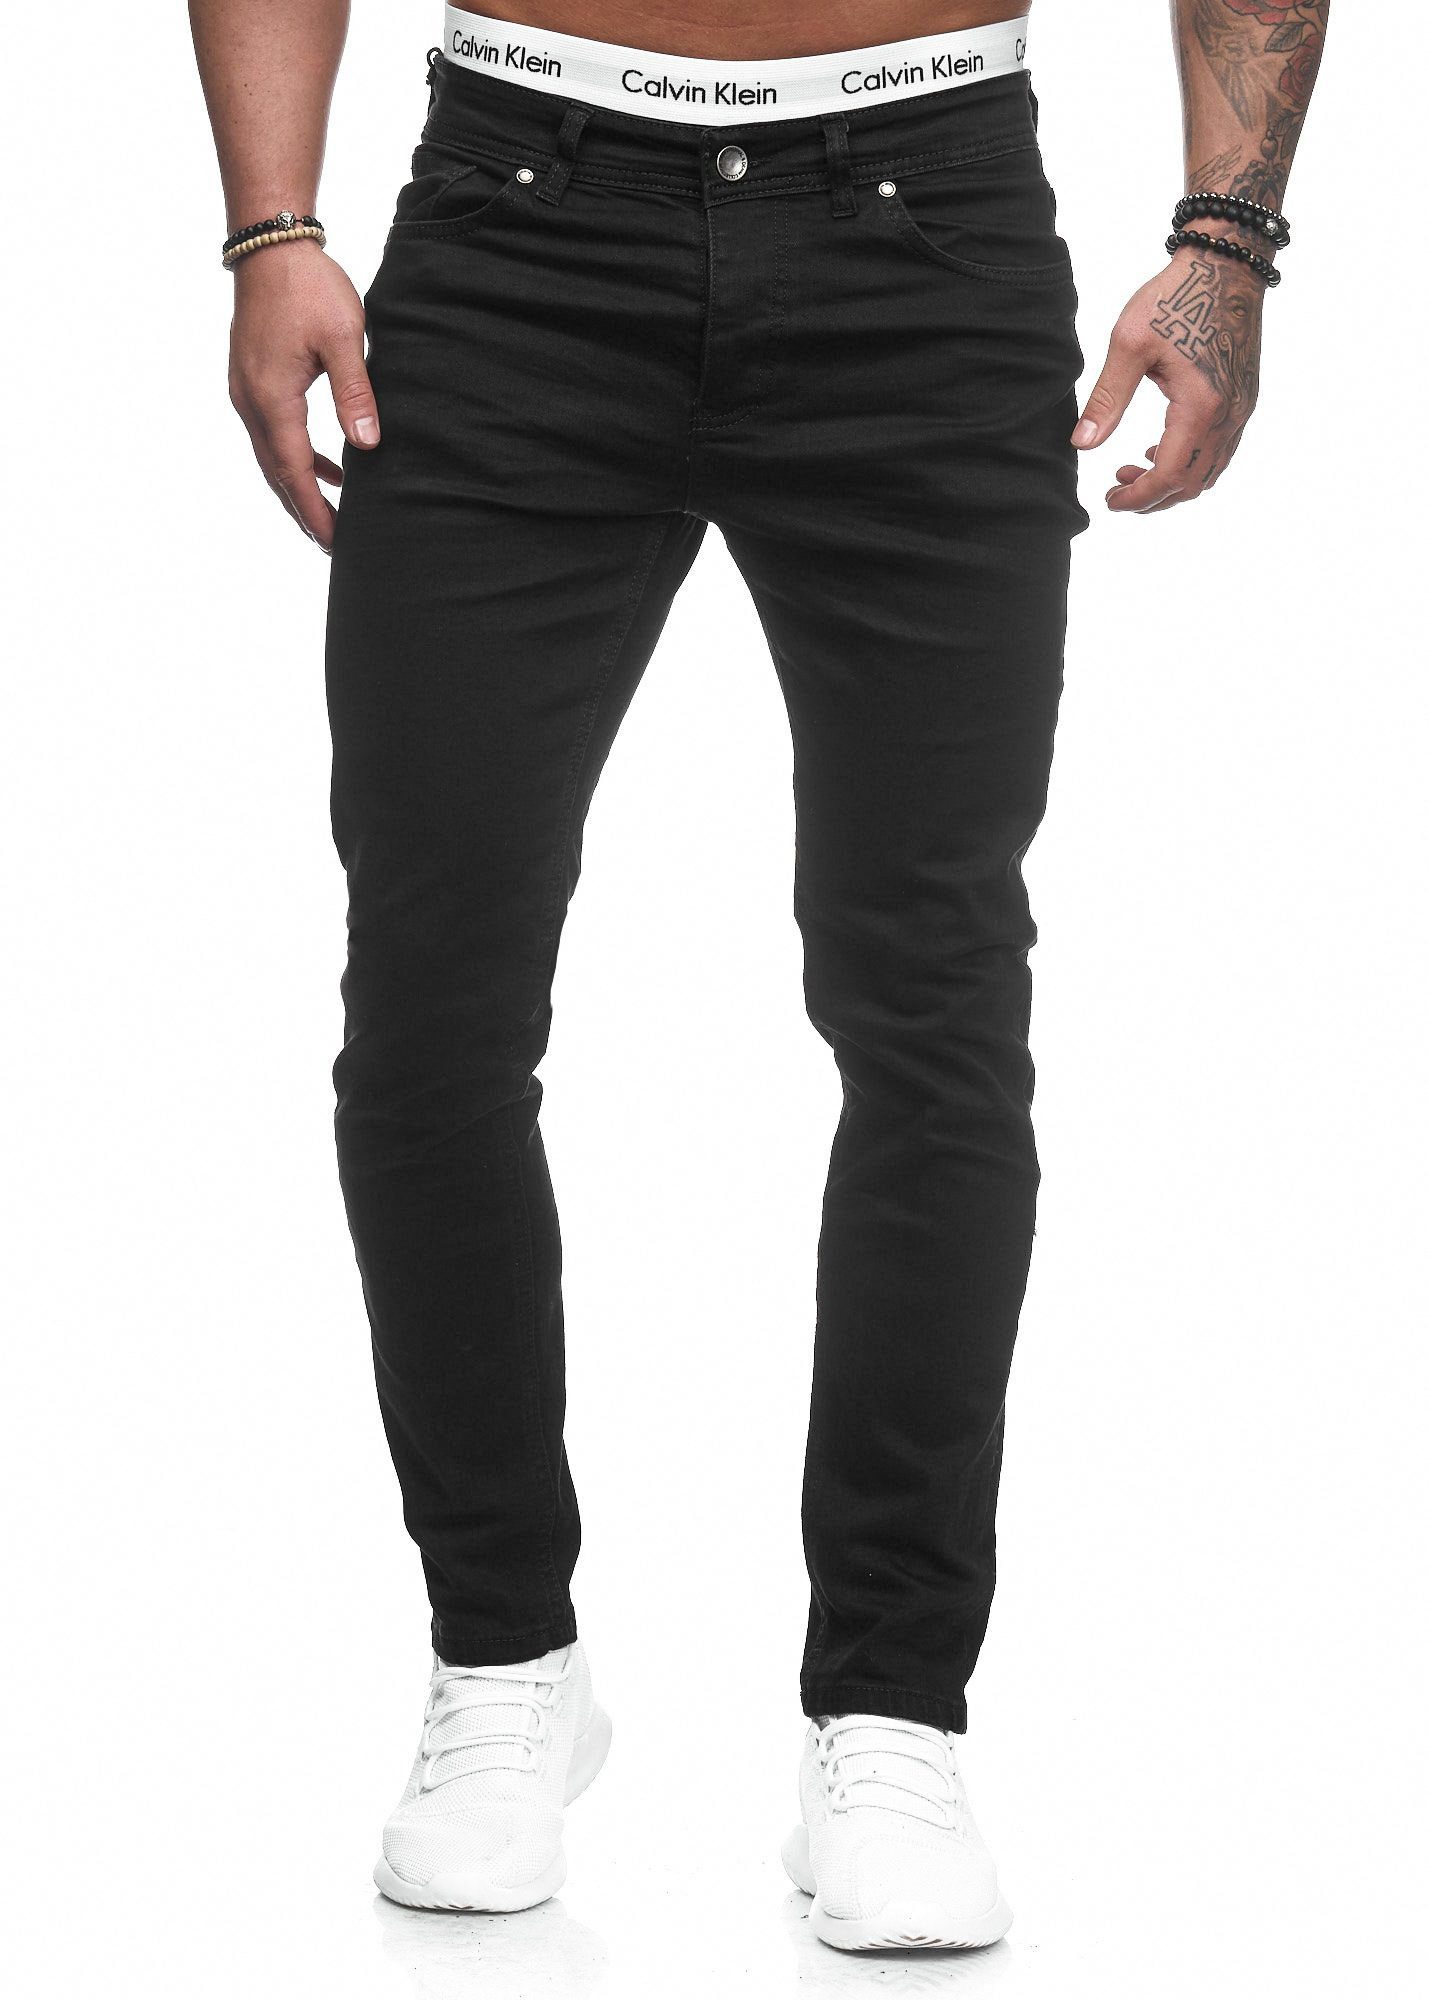 Jeanshose Jeans Fit Herren Basic Designer Code47 Slim Schwarz Slim-fit-Jeans 5078 Stretch Chino Hose